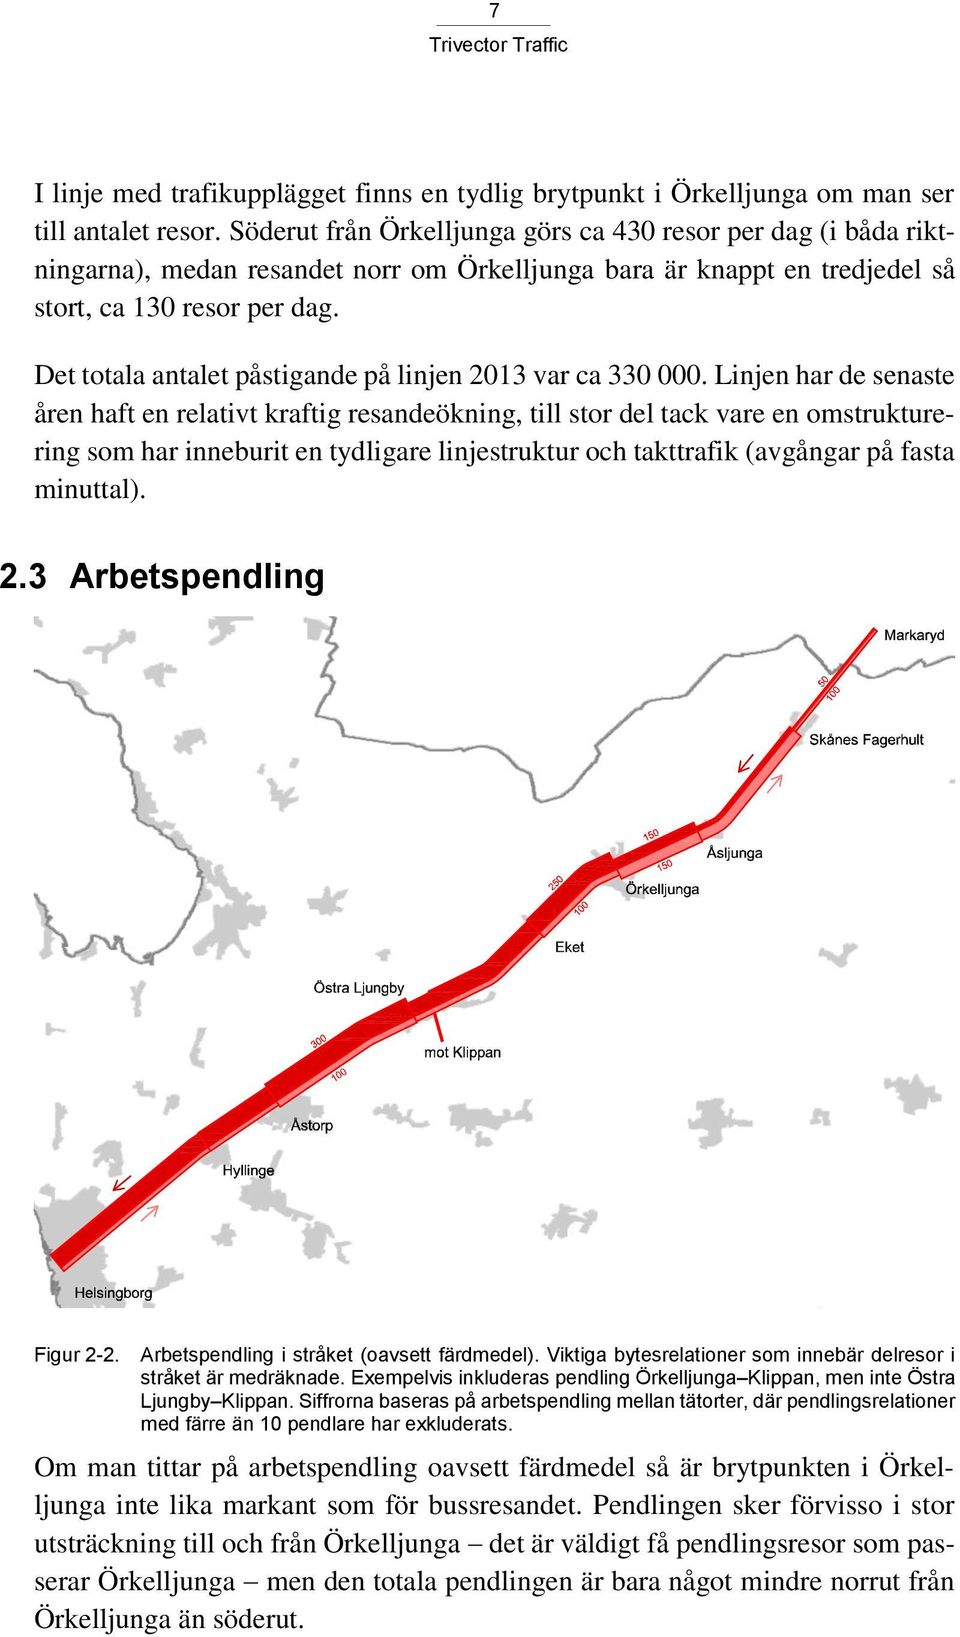 Det totala antalet påstigande på linjen 2013 var ca 330 000.